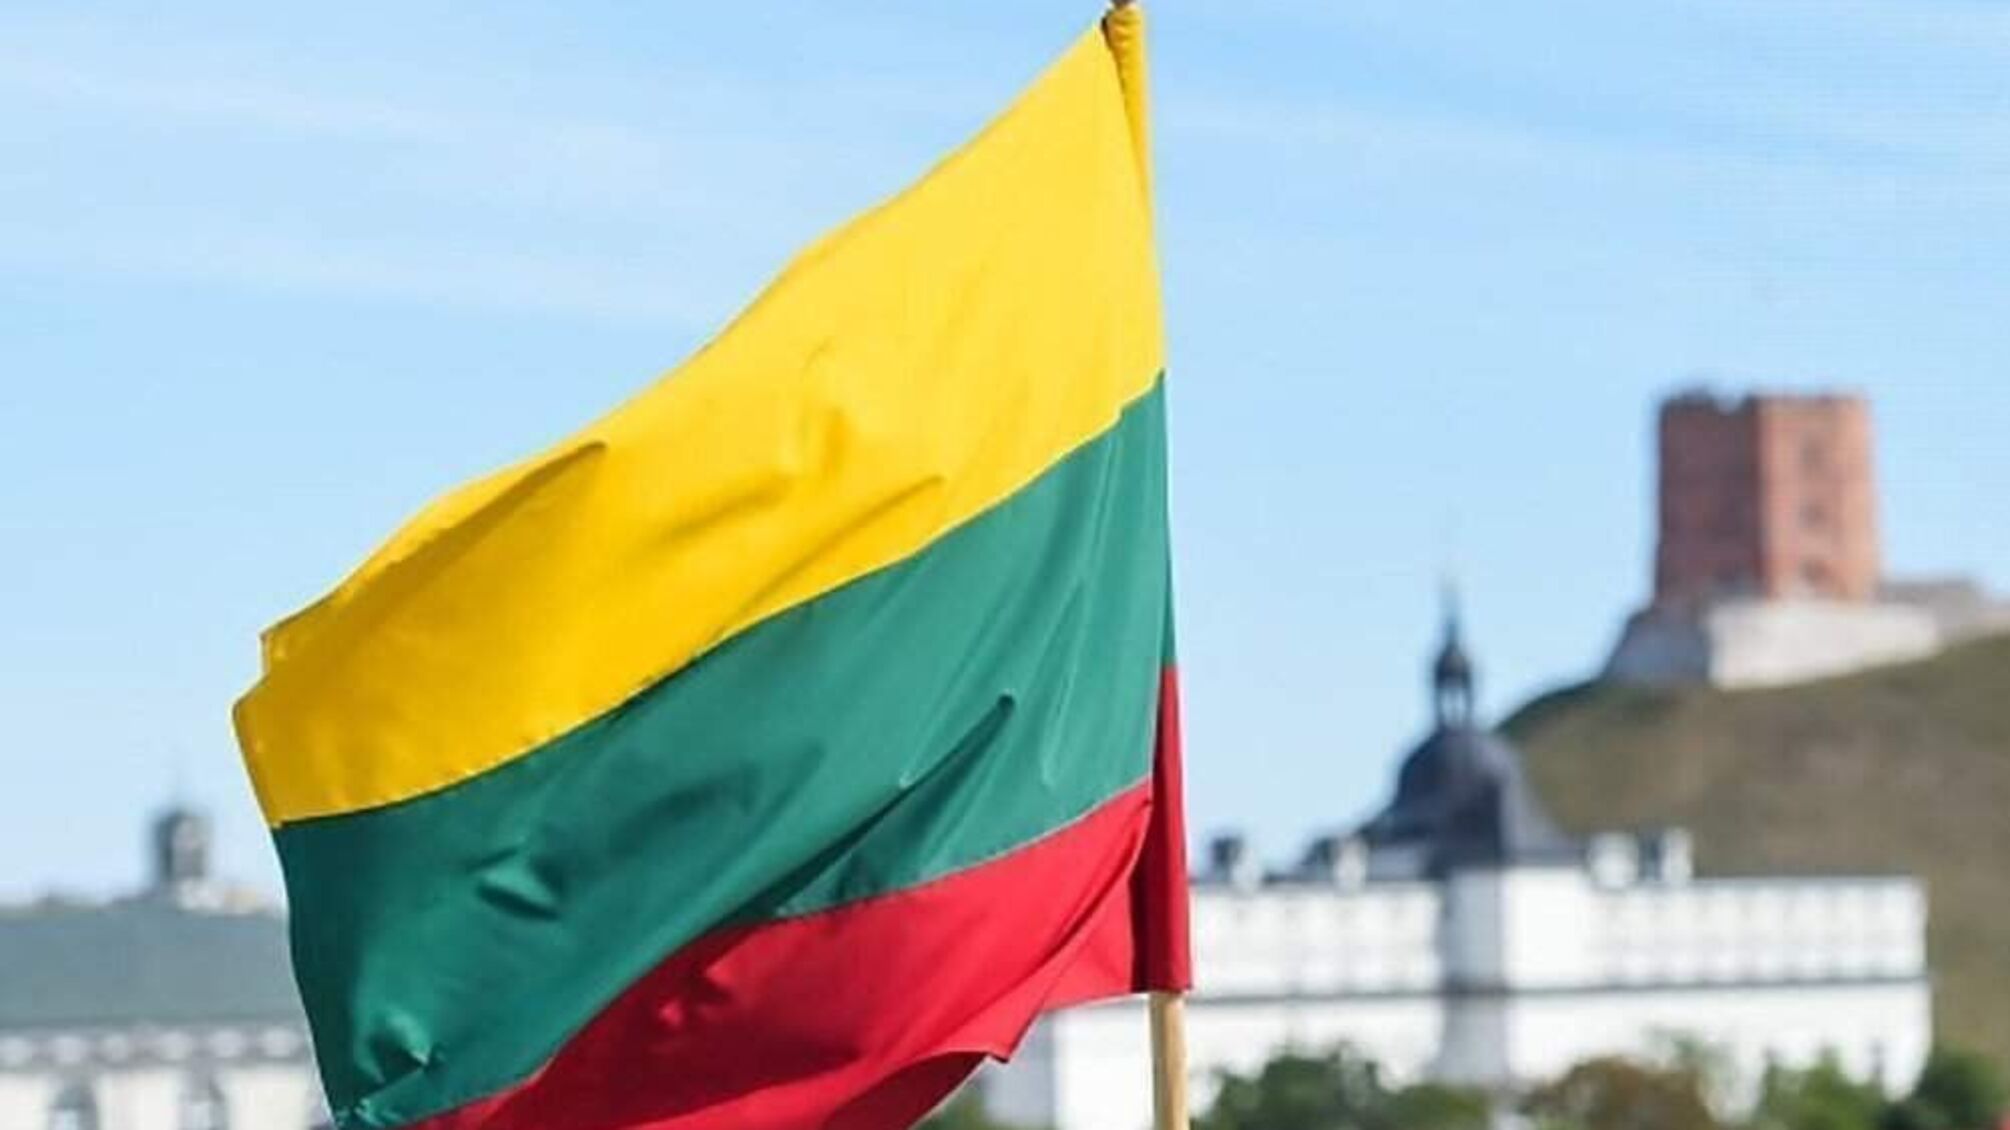 В Литве начали демонтаж крупнейшего мемориала советским войскам, несмотря на позицию комитета ООН